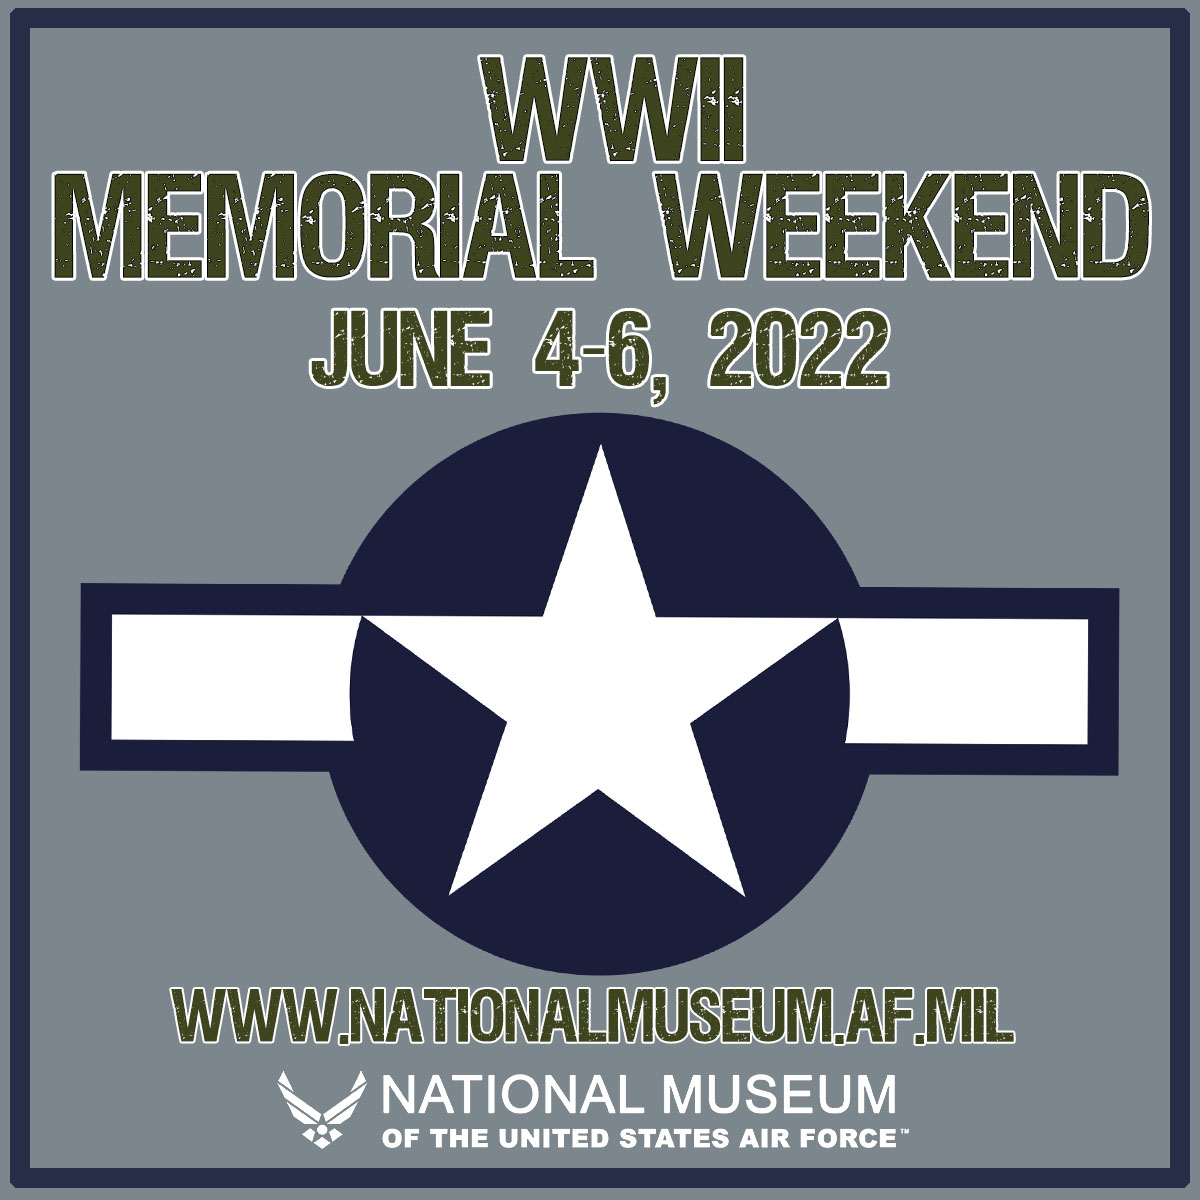 WWII Memorial Weekend June 4-6